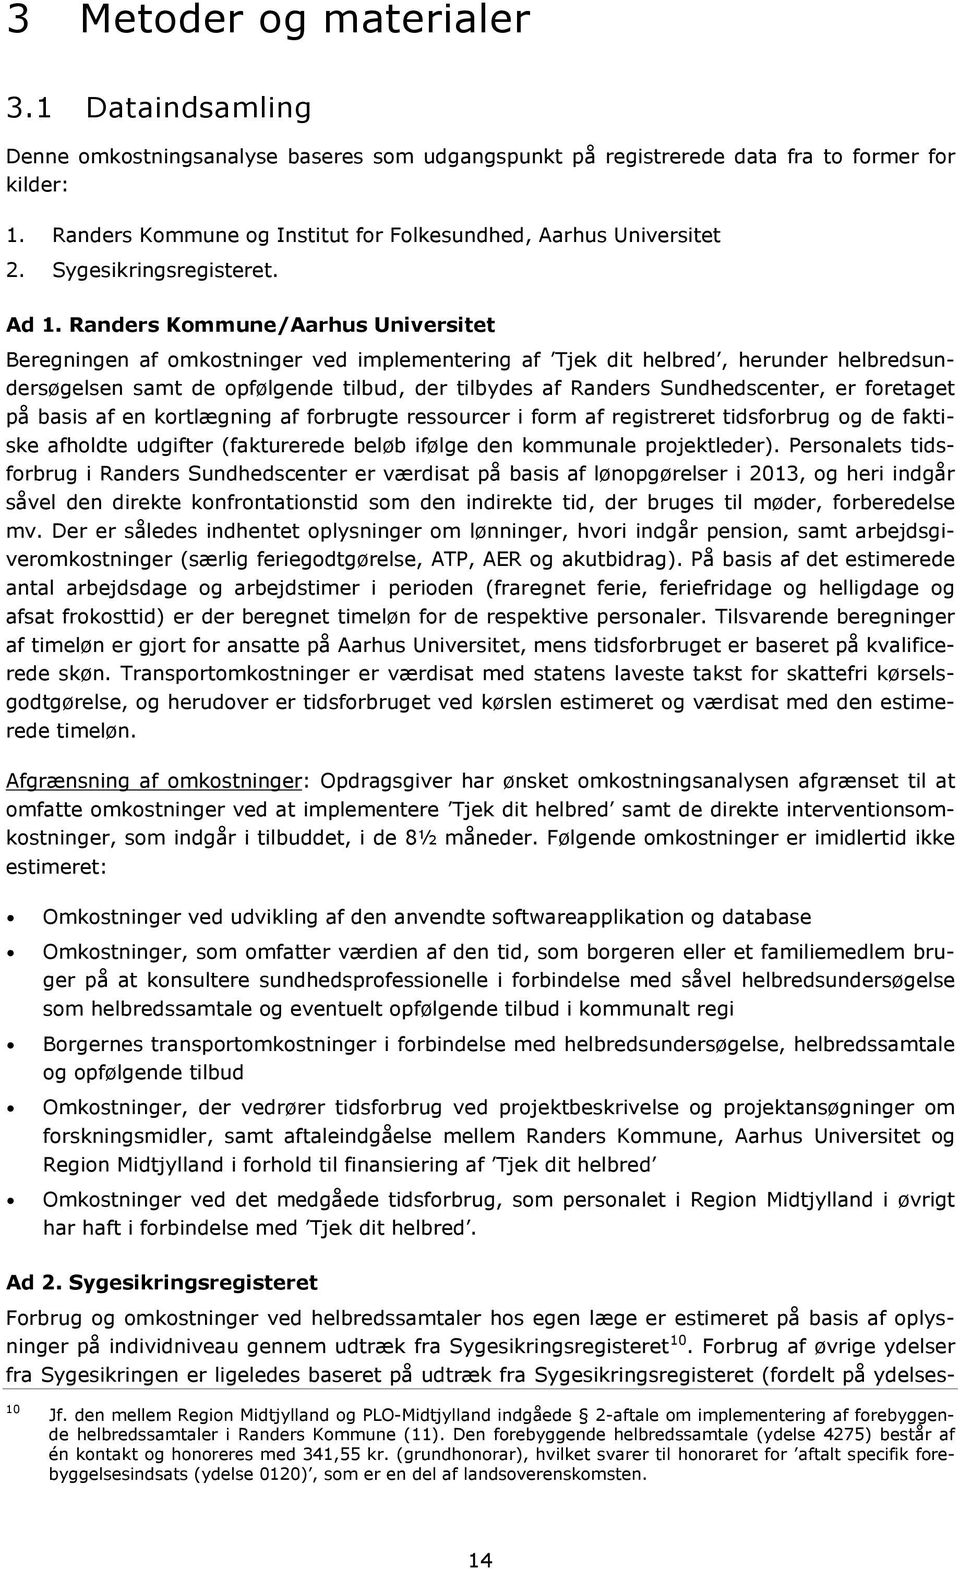 Randers Kommune/Aarhus Universitet Beregningen af omkostninger ved implementering af Tjek dit helbred, herunder helbredsundersøgelsen samt de opfølgende tilbud, der tilbydes af Randers